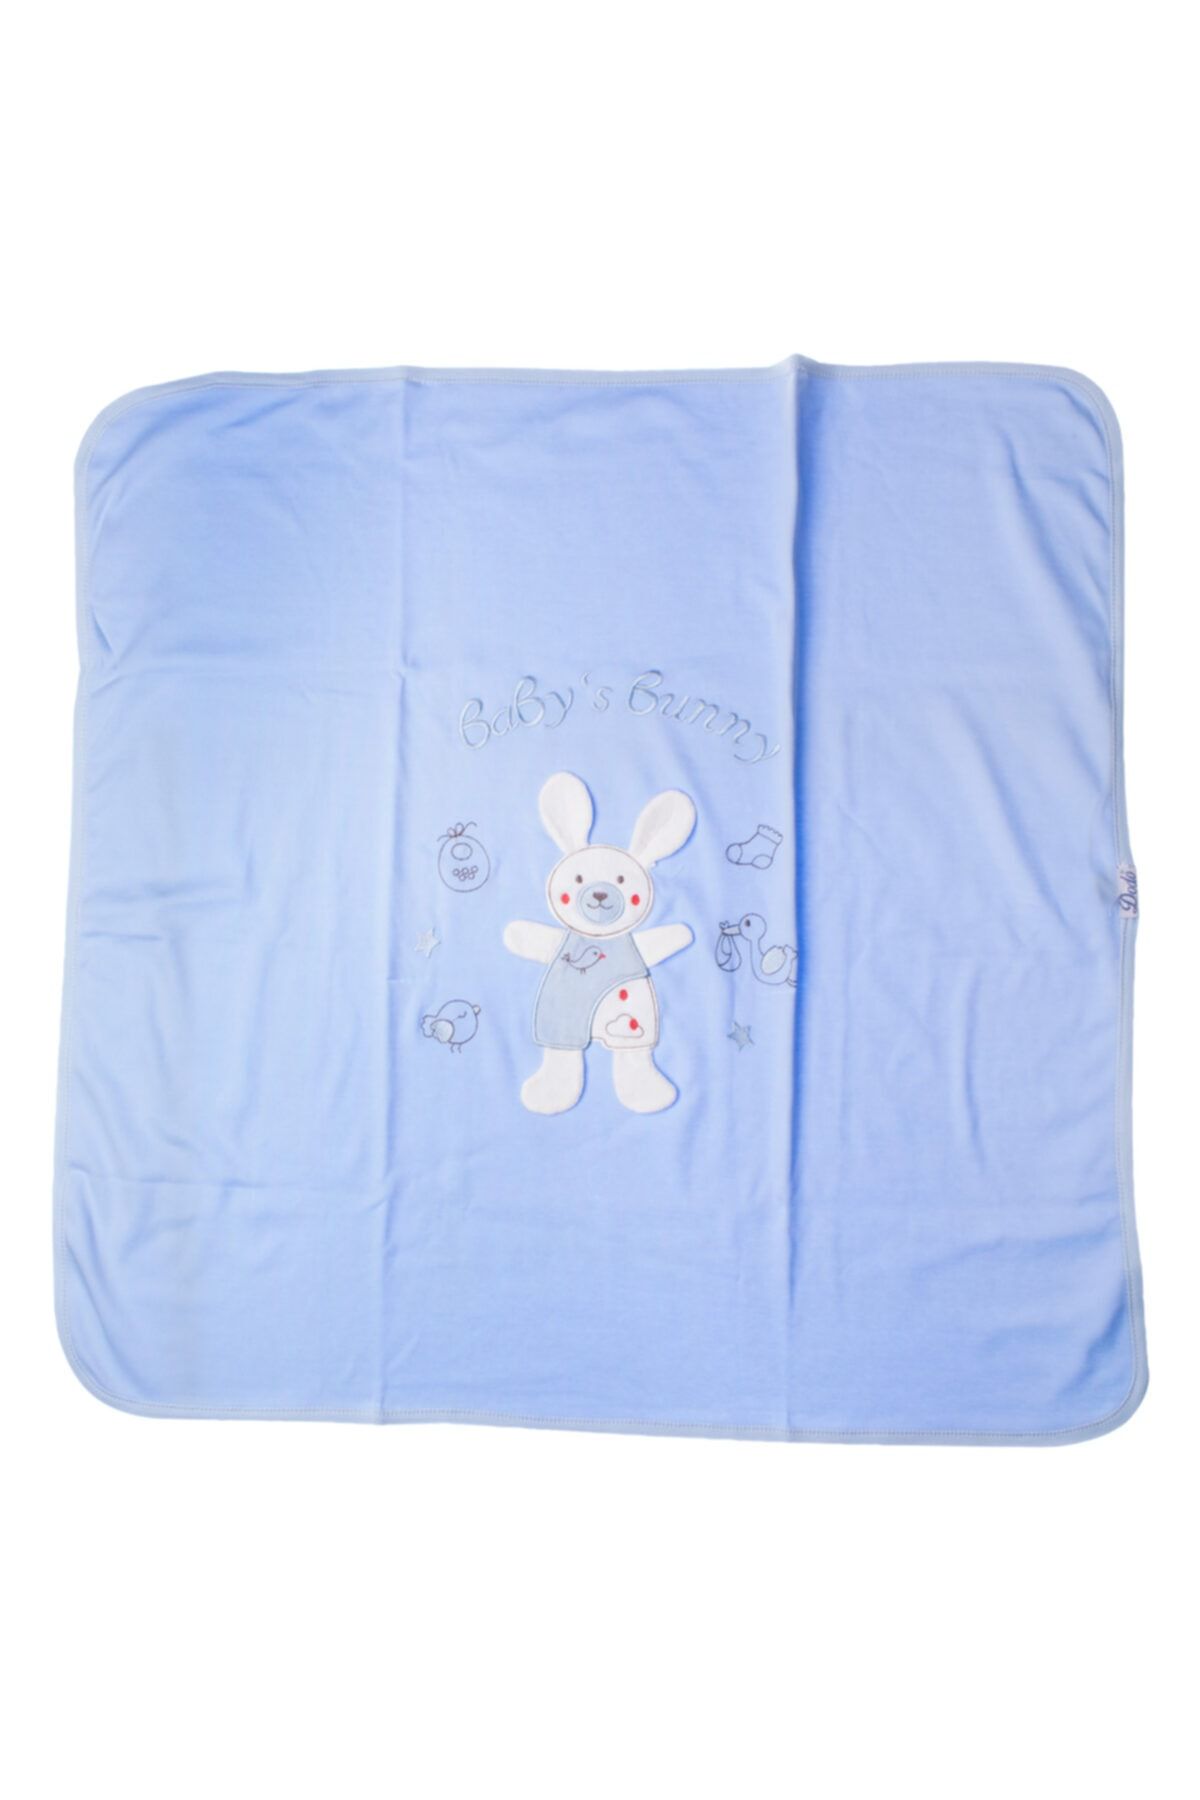 Albimini Mavi Akyüz Bebe Tavşan Baskılı 90 X 80 cm Penye Battaniye